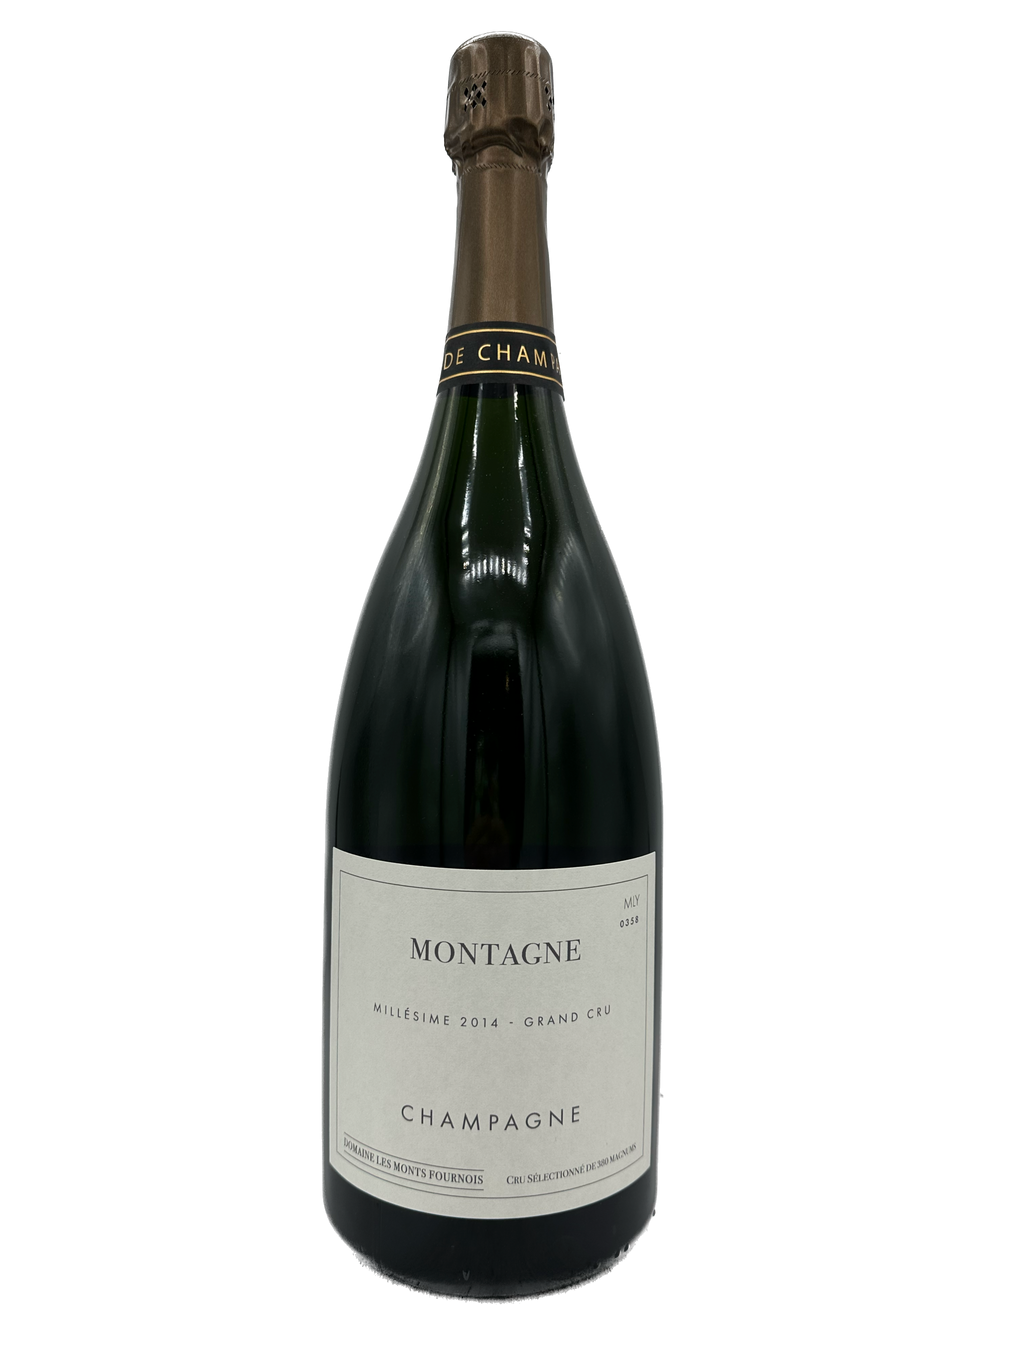 NV Gaston Chiquet Blanc de Blancs d'Ay Brut Champagne Magnum – AOC  Selections